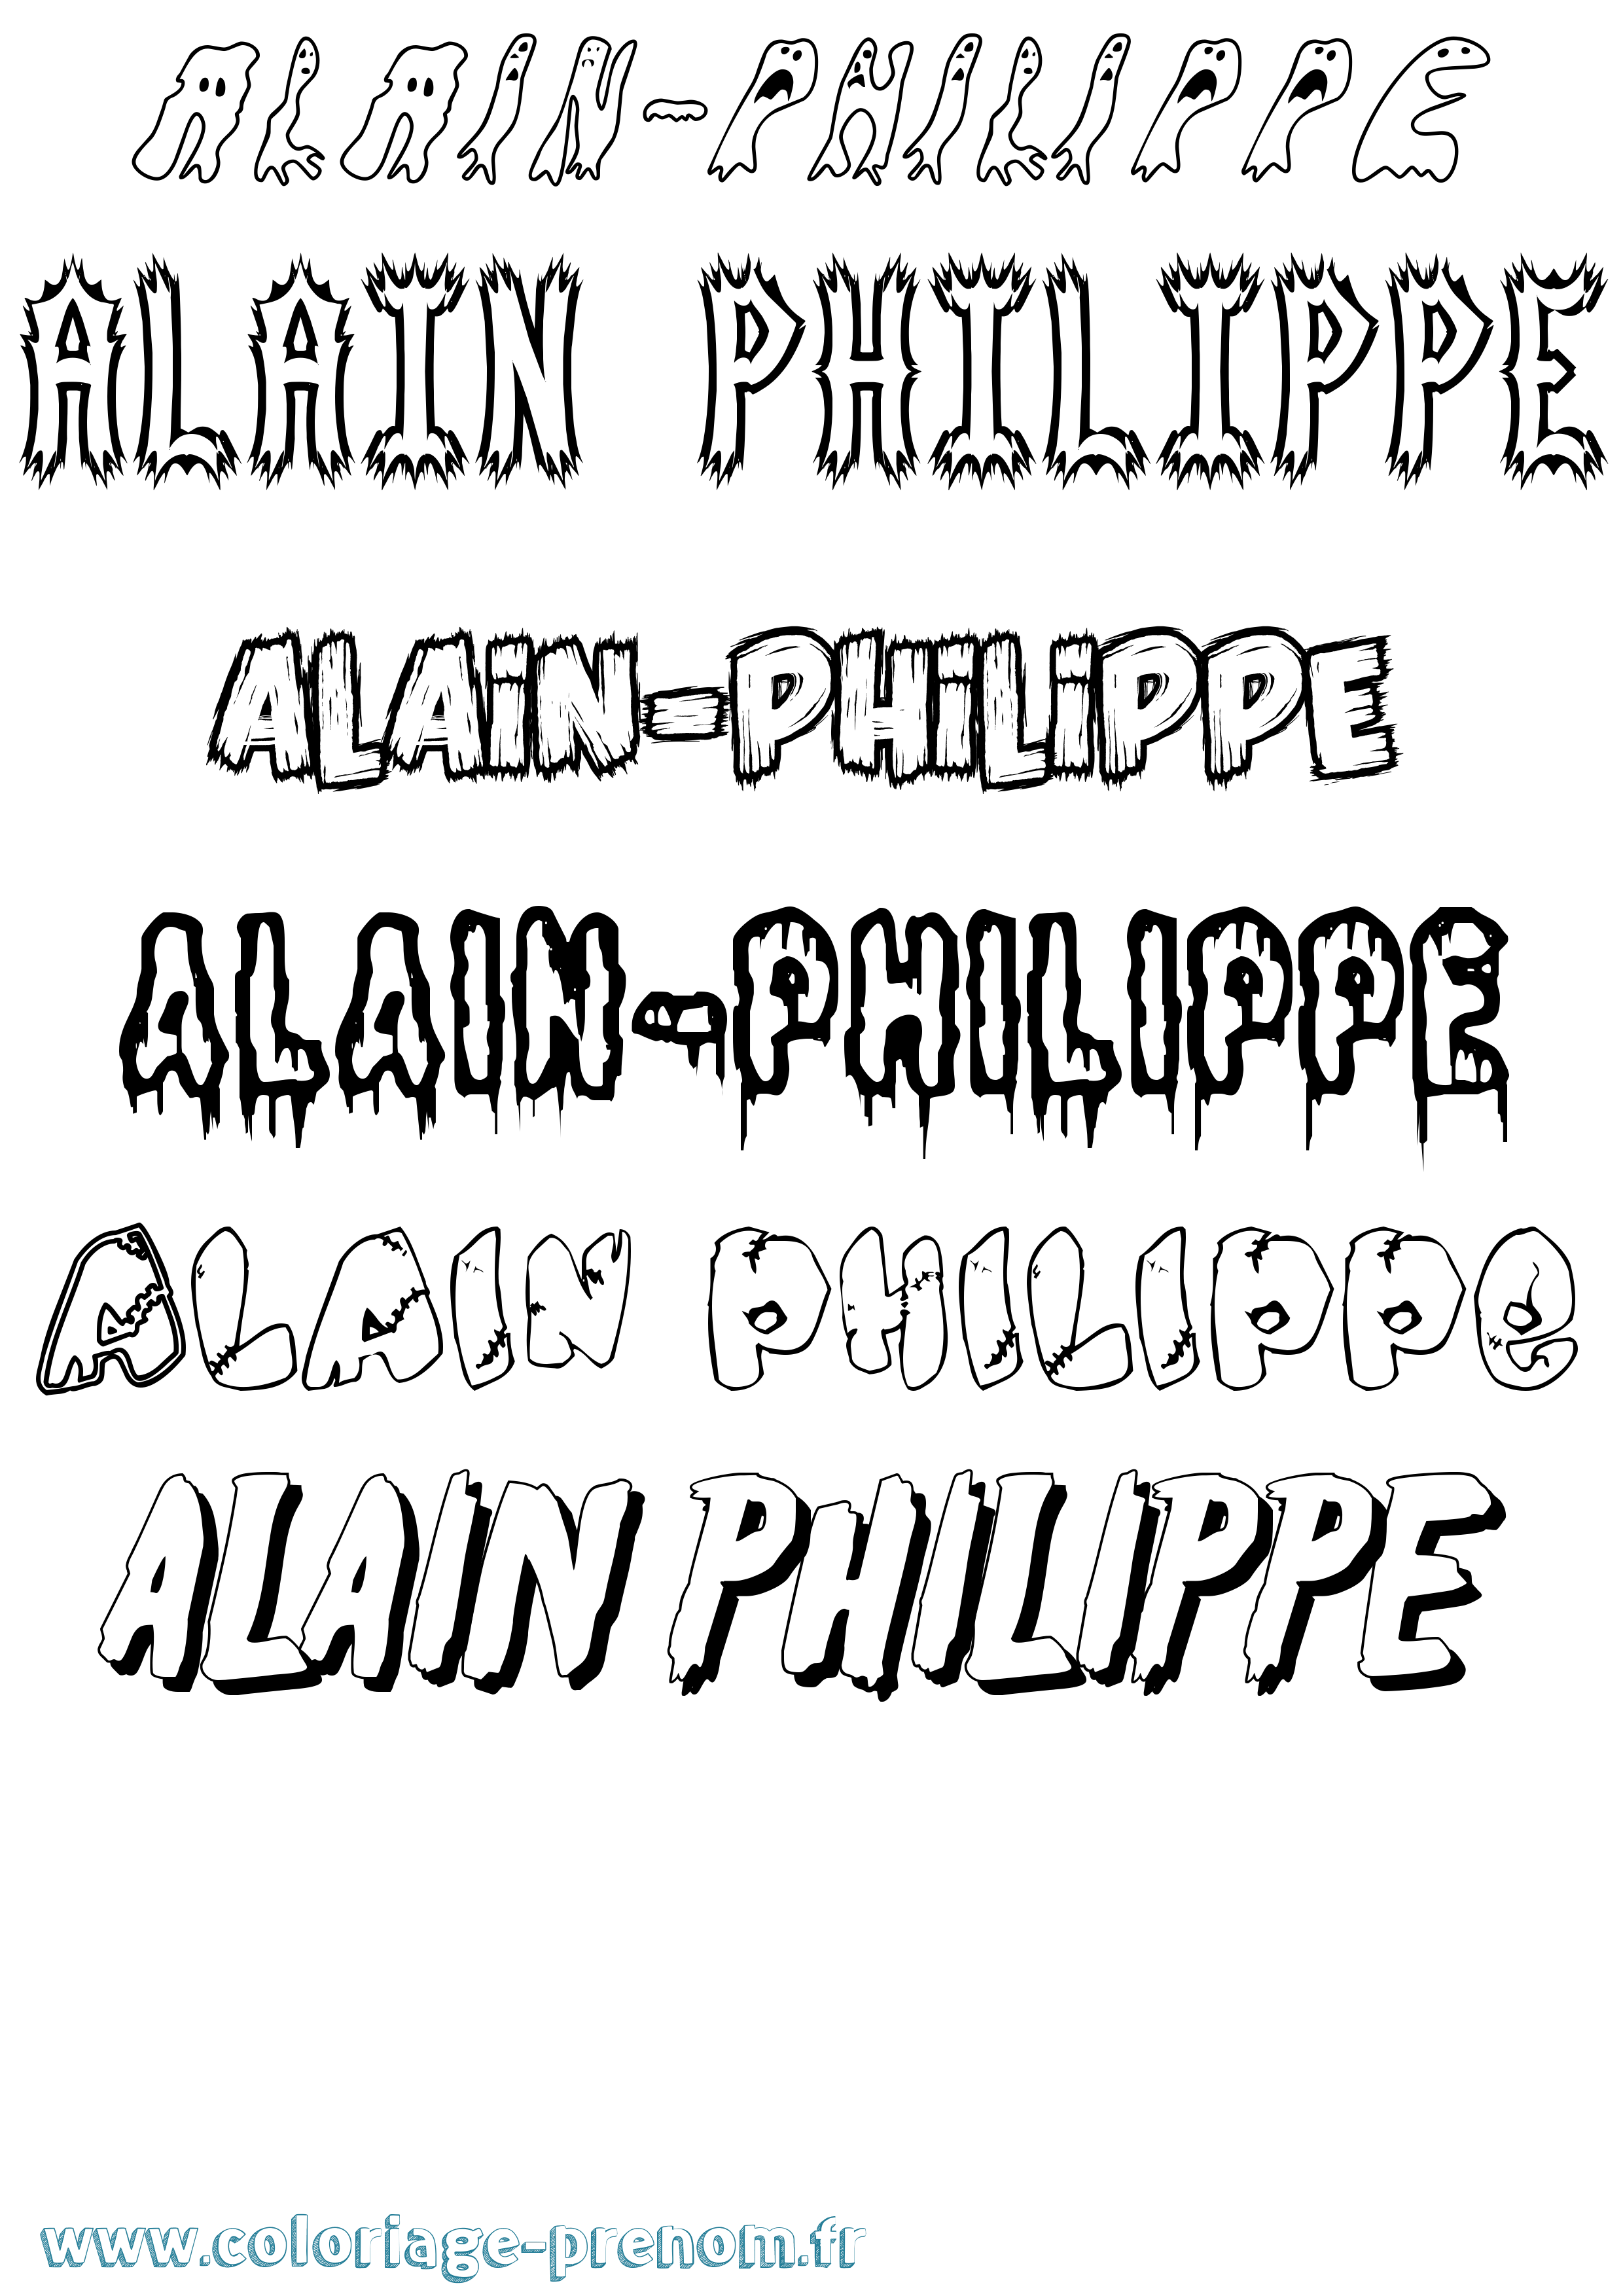 Coloriage prénom Alain-Philippe Frisson